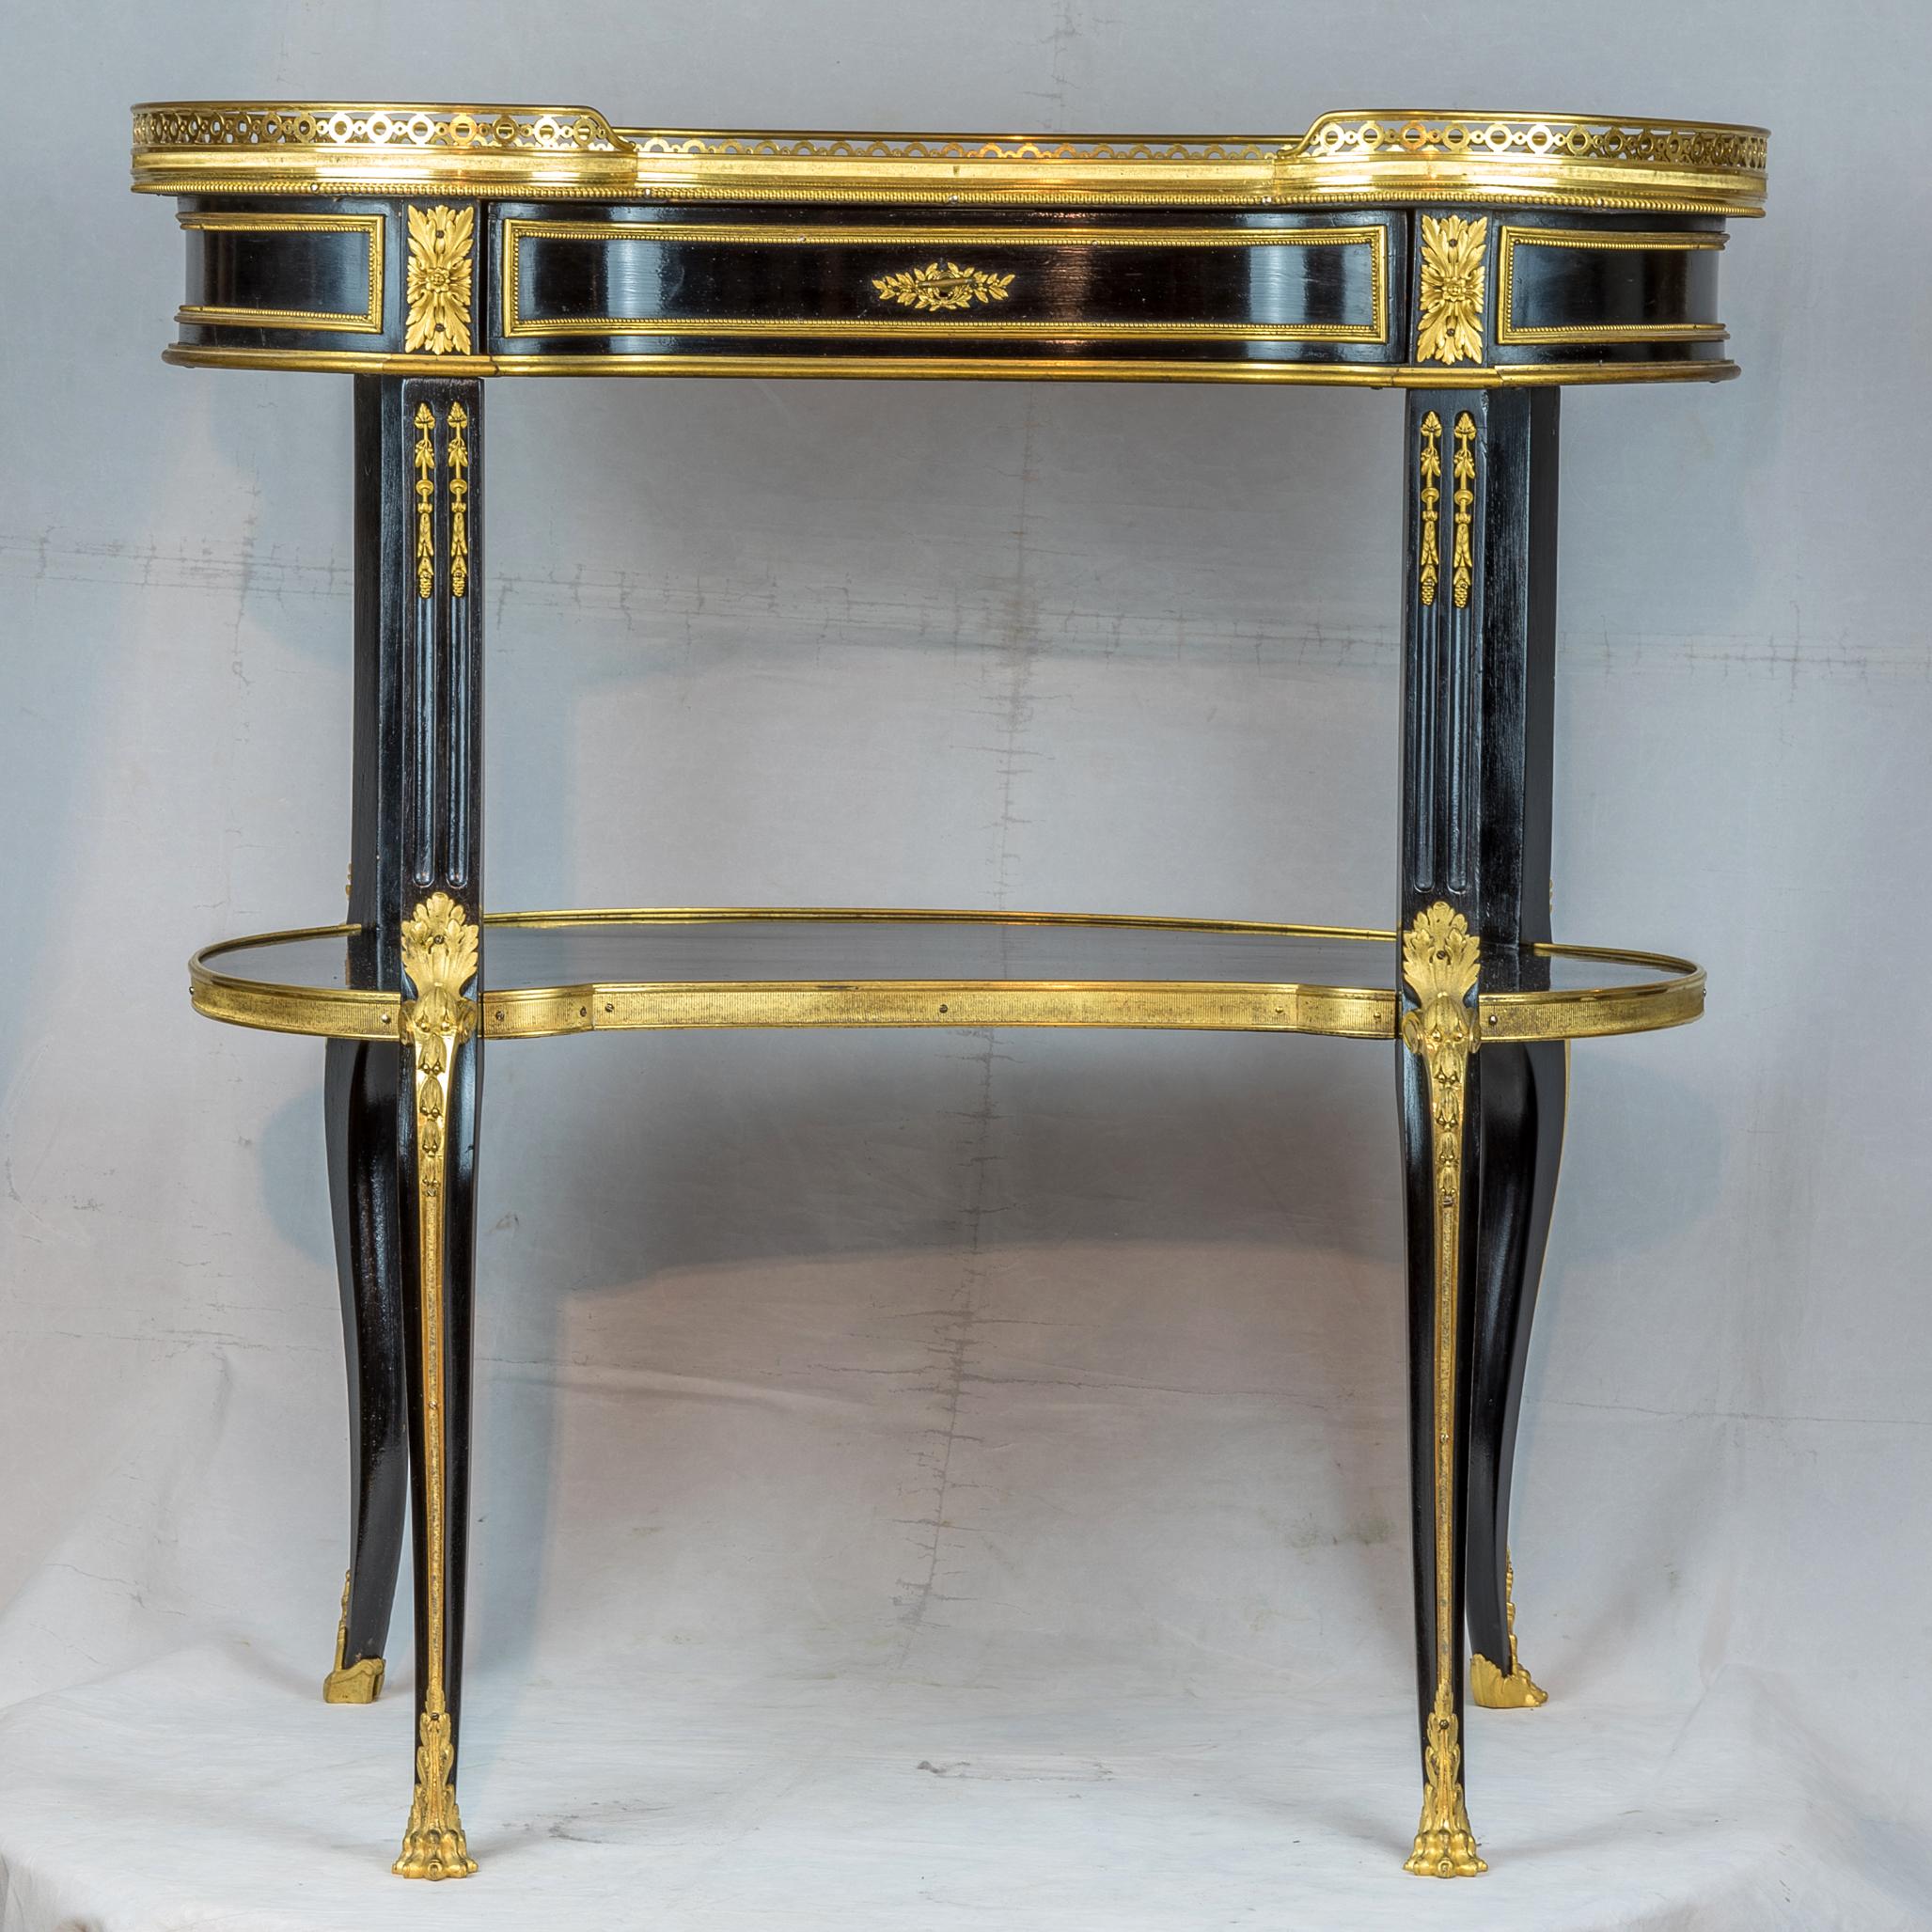 Feine Qualität Louis XVI Stil vergoldeter Bronze montiert ebonisiert Schreibtisch.
Ein prächtiger französischer, mit Ormolu beschlagener ebonisierter Schreibtisch.

Datum: 19. Jahrhundert
Herkunft: Französisch
Abmessungen: 28 x 27 x 17 Zoll.